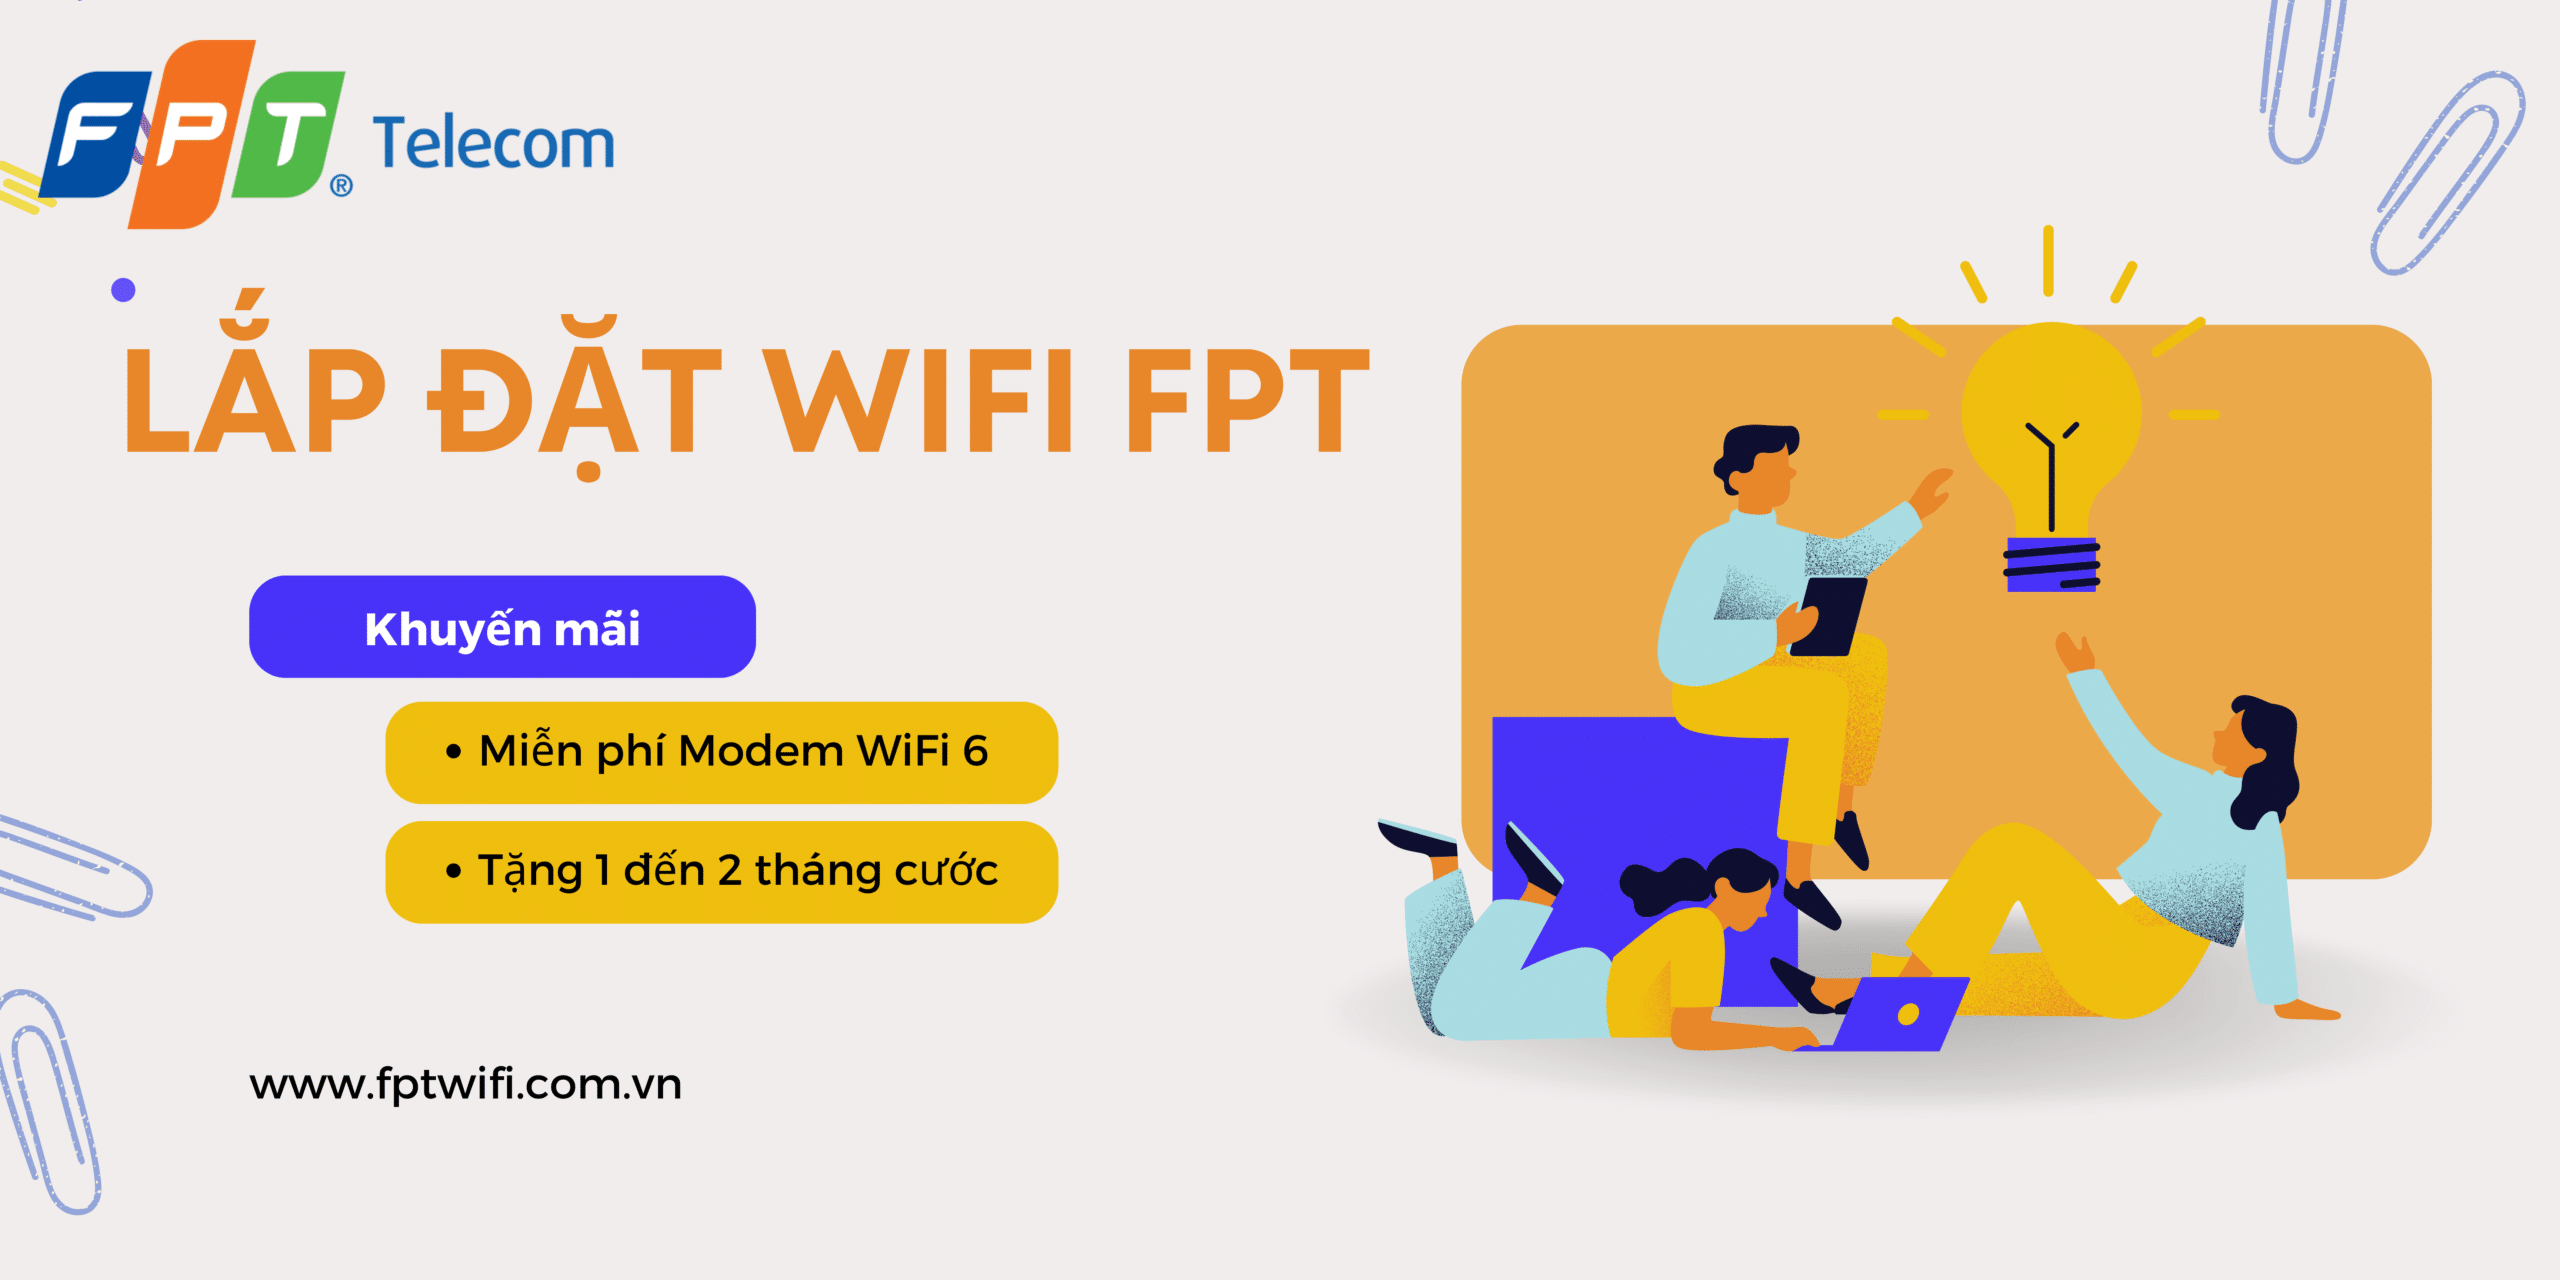 LẮp ĐẶt MẠng Wifi Fpt, lắp đặt wifi fpt, wifi fpt, khuyến mãi wifi fpt